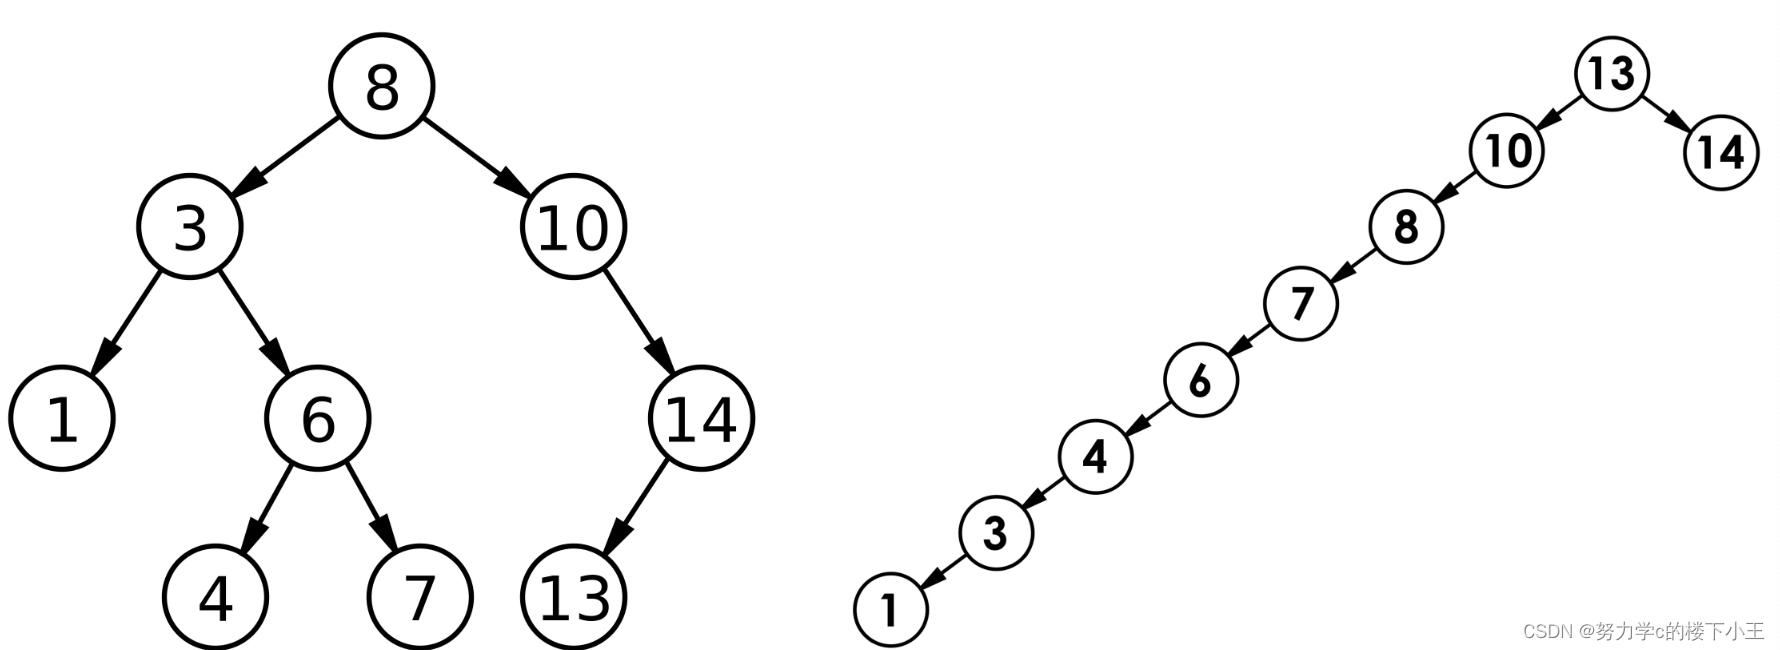 【C++】 二叉排序树BST(二叉搜索树)